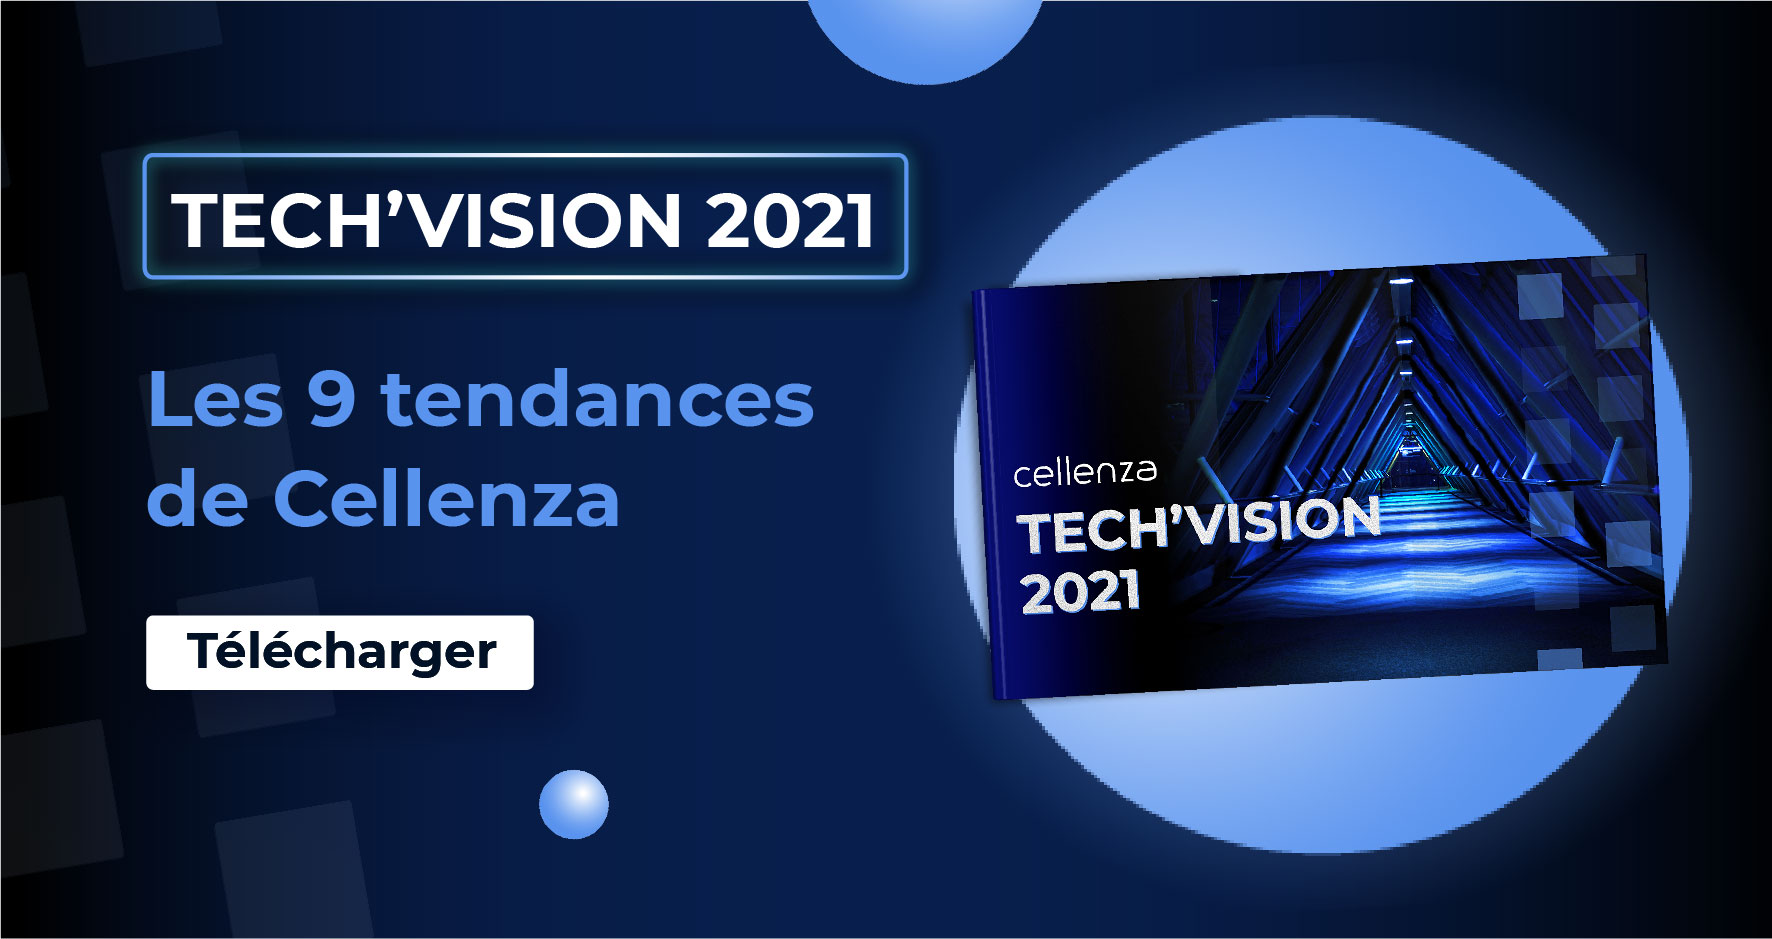 Tech'Vision 2021 Cellenza